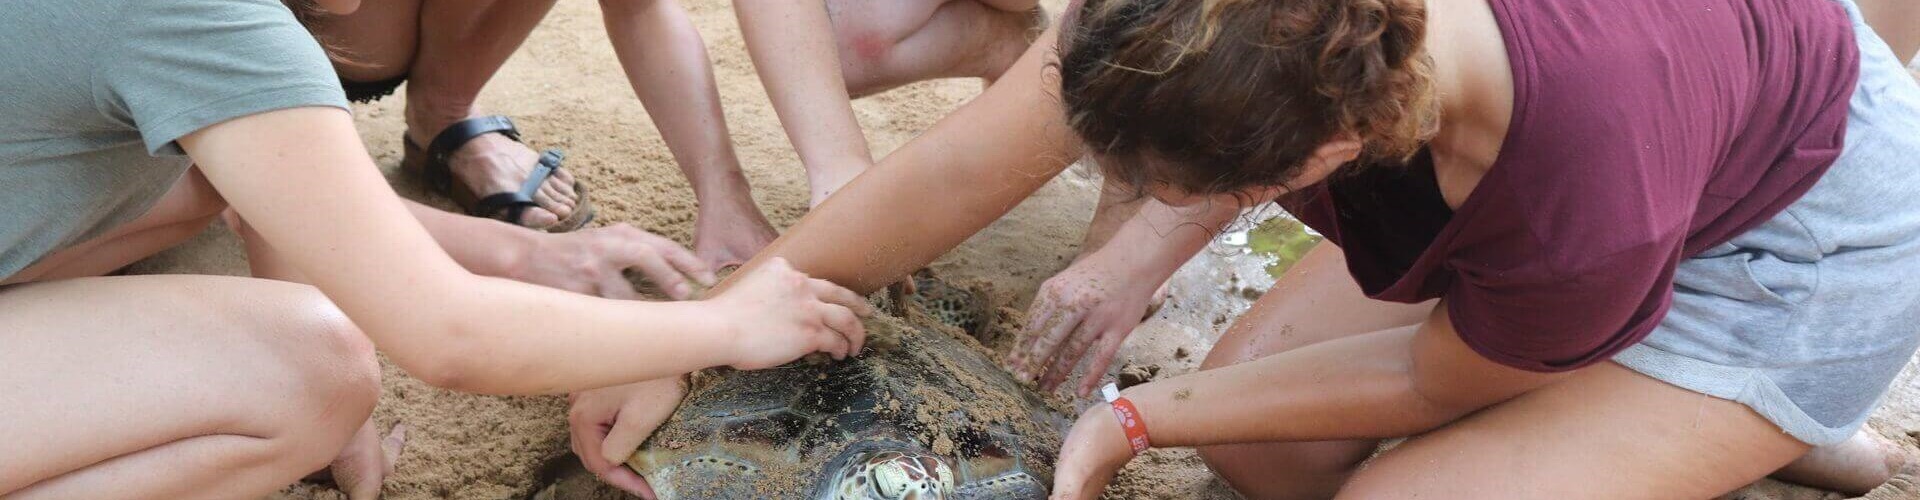 Freiwilligenarbeit zum Schutz der Meeresschildkröten in Sri Lanka